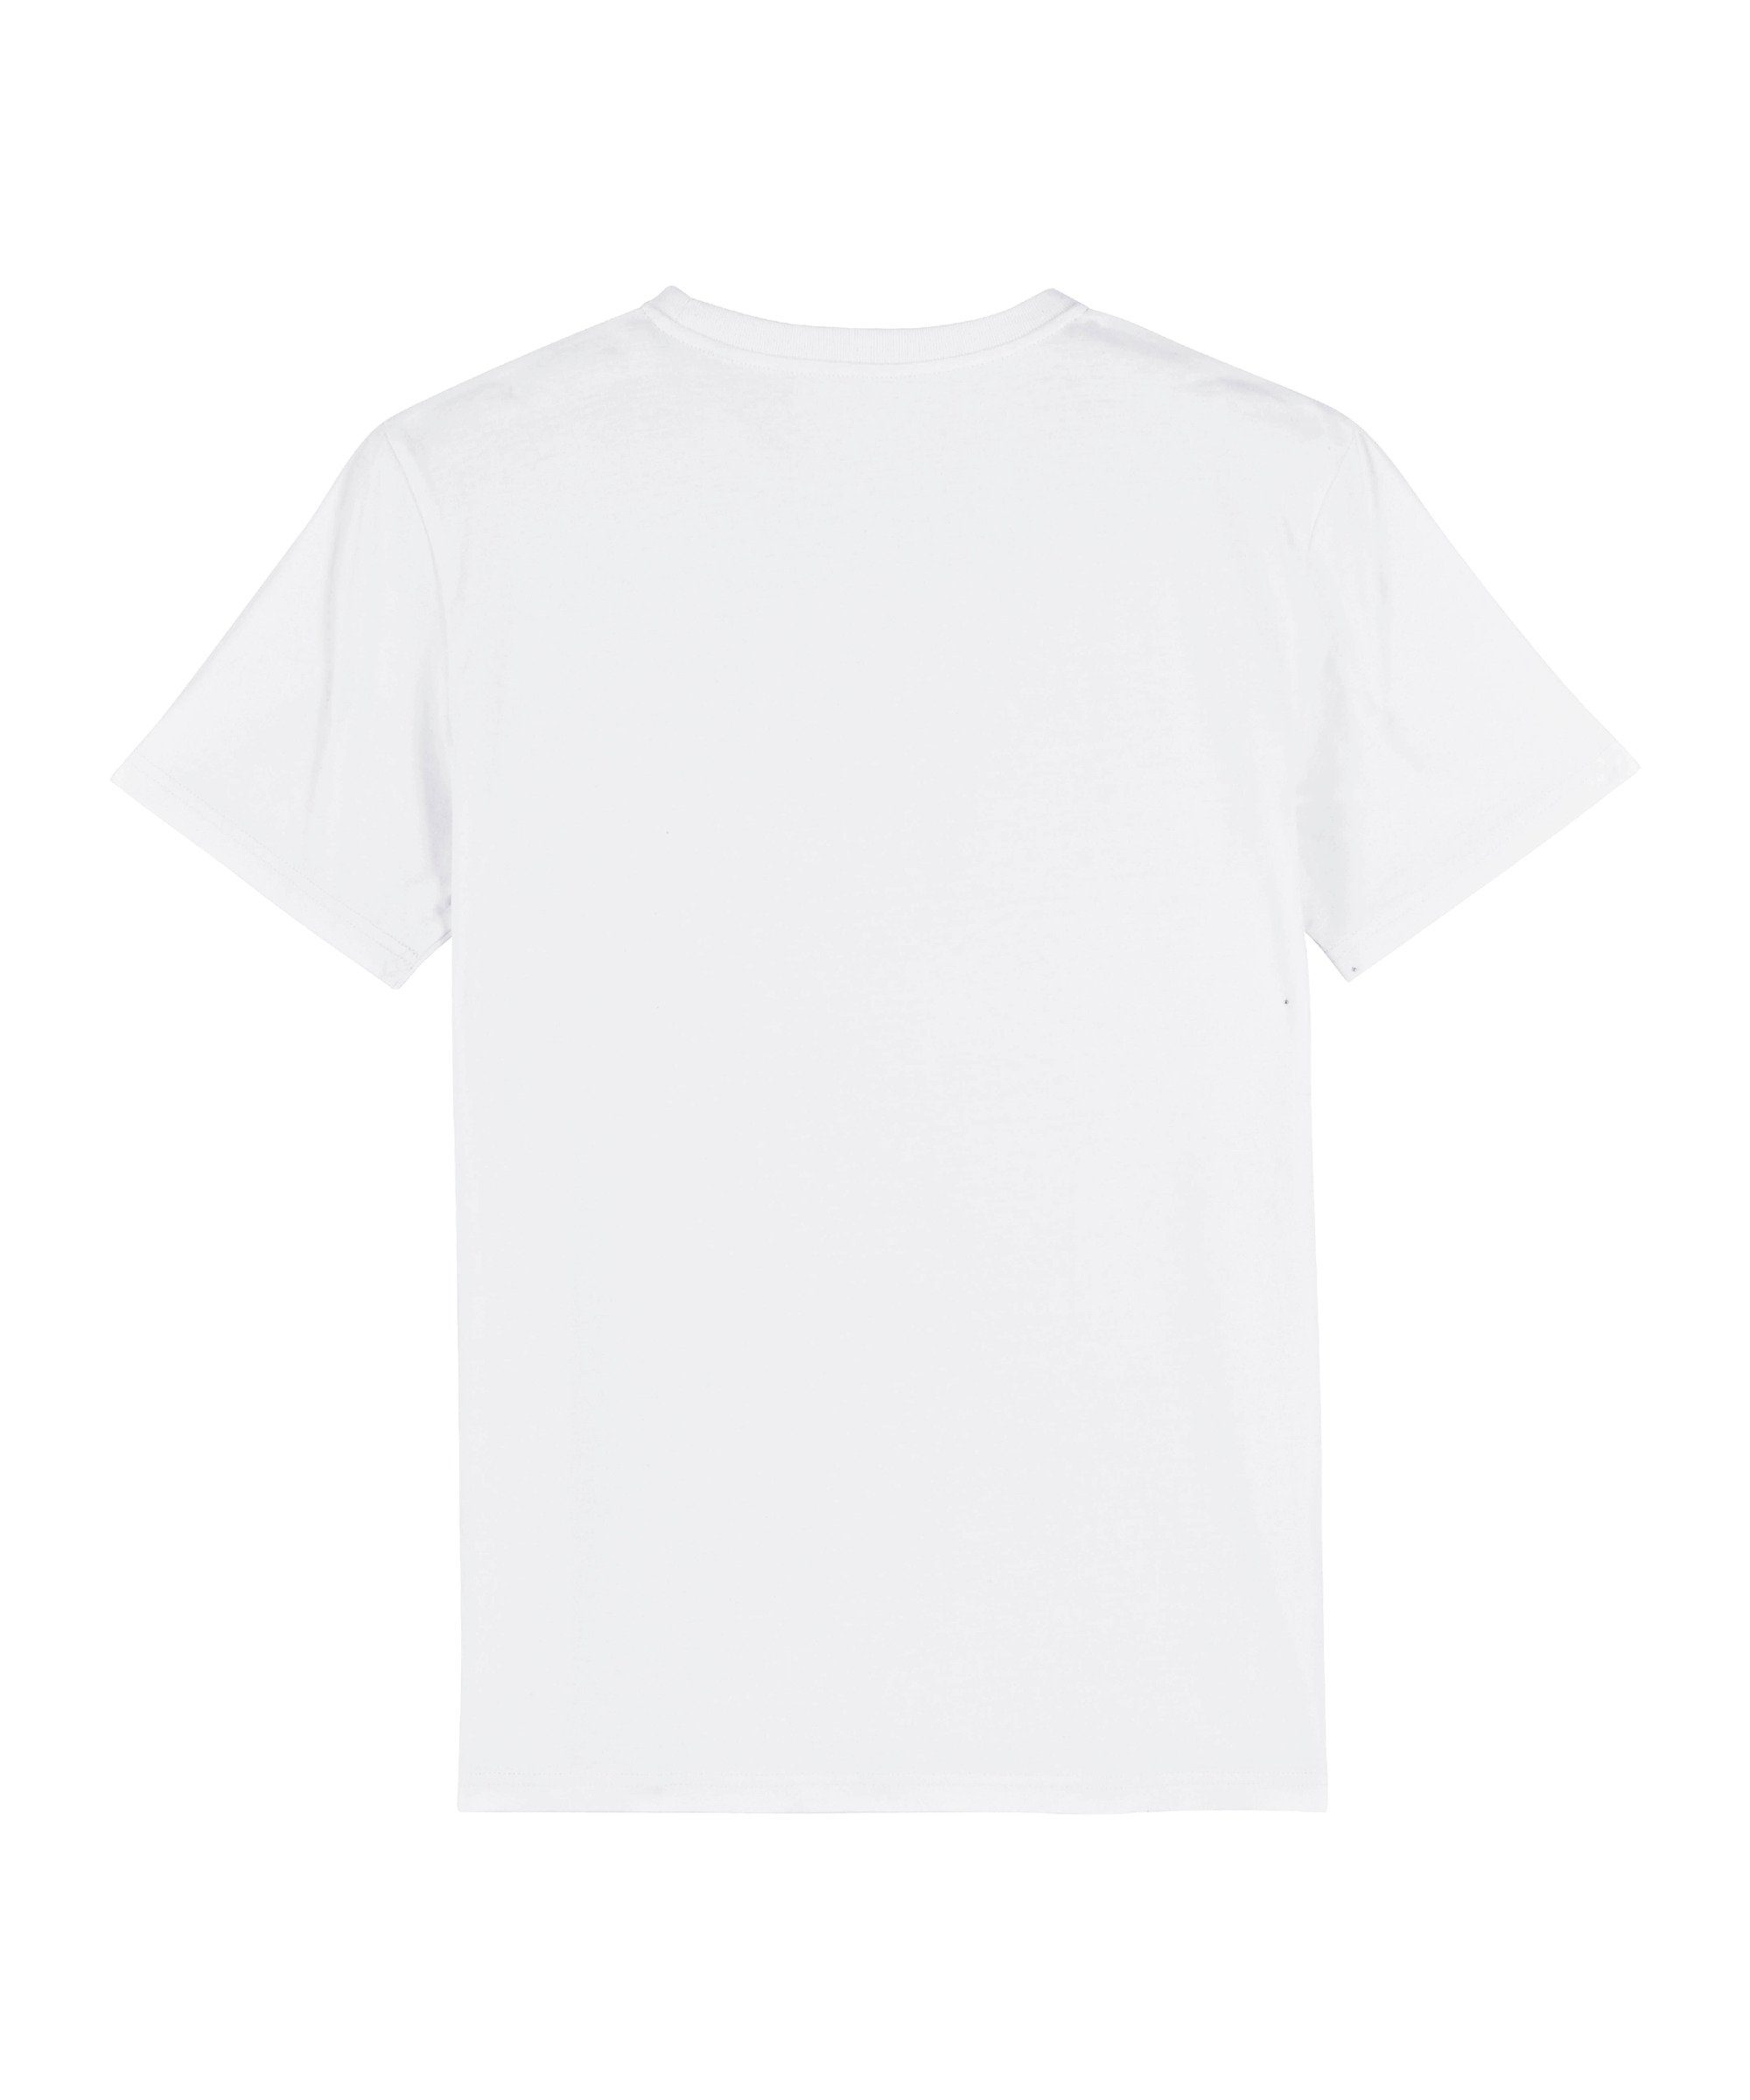 Bolzplatzkind T-Shirt "Classic" T-Shirt Nachhaltiges Produkt weiss